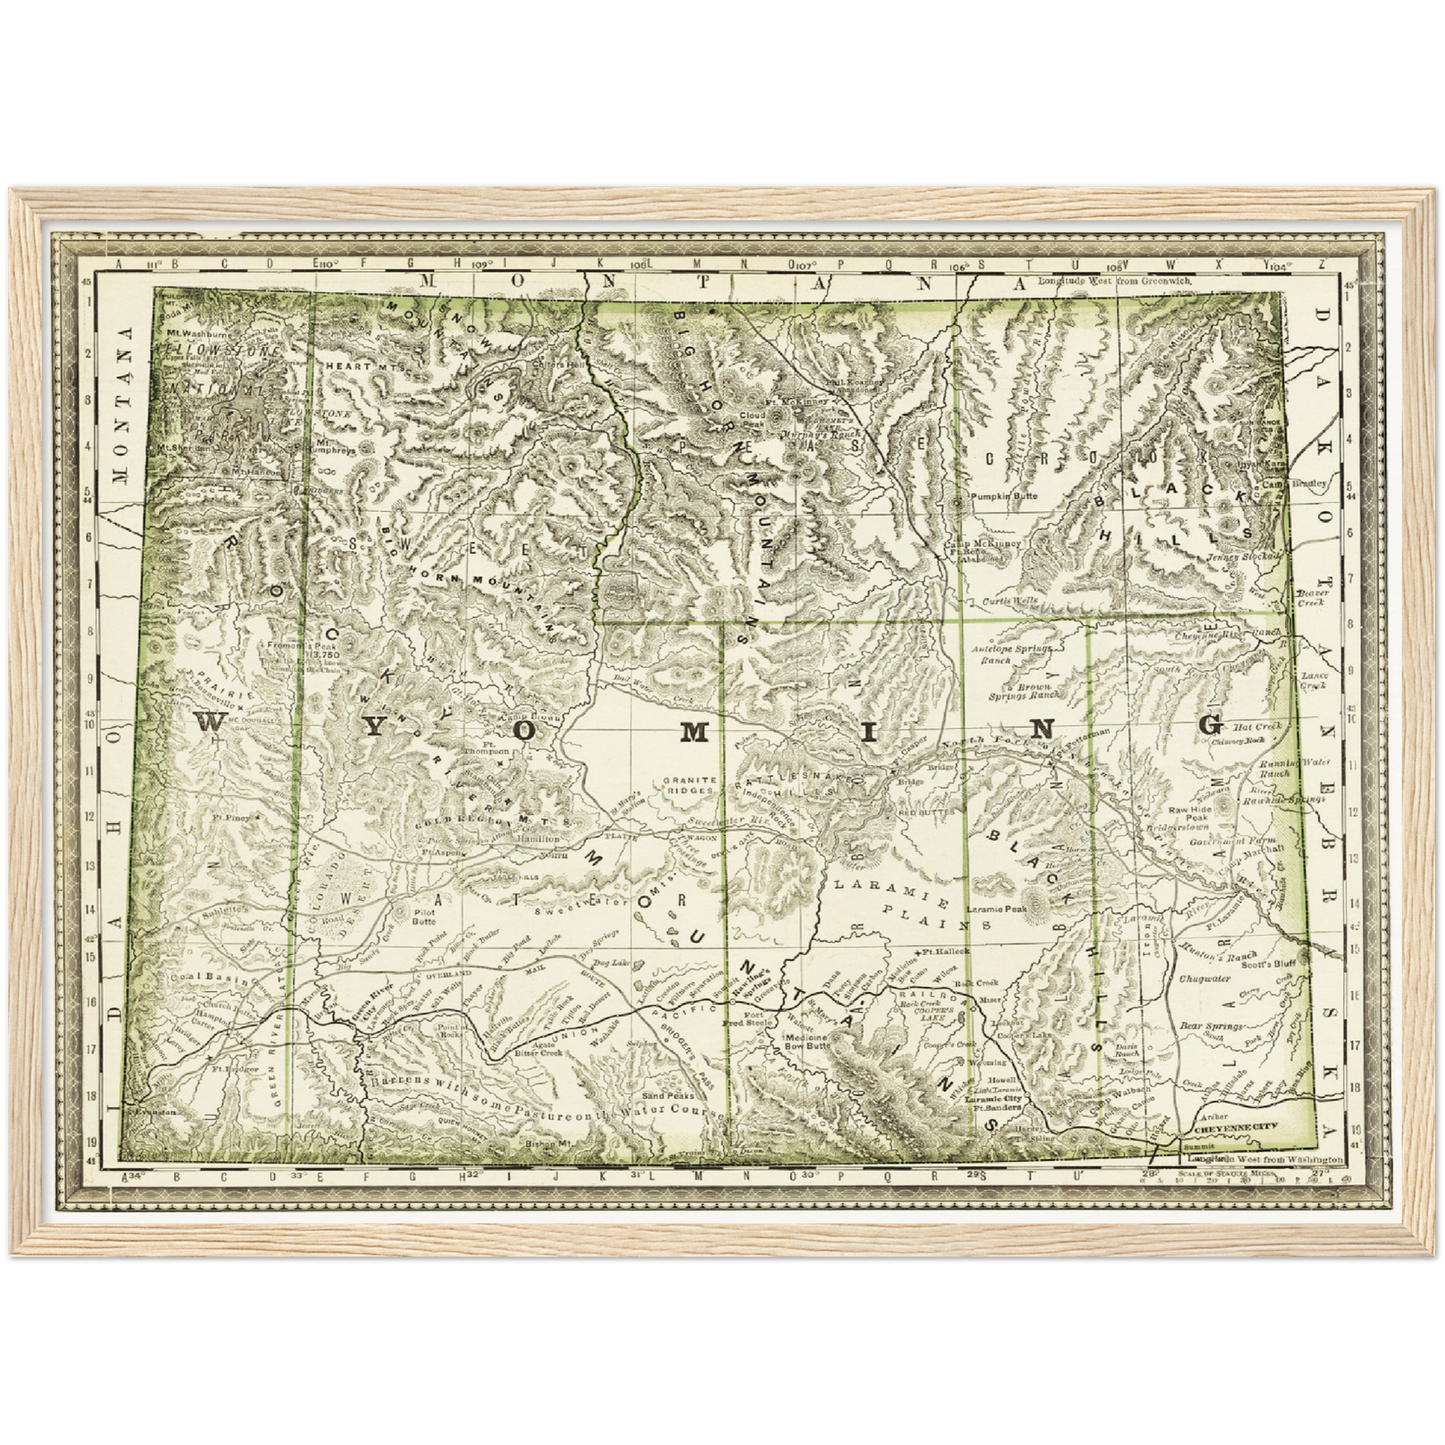 Historische Landkarte Wyoming um 1882